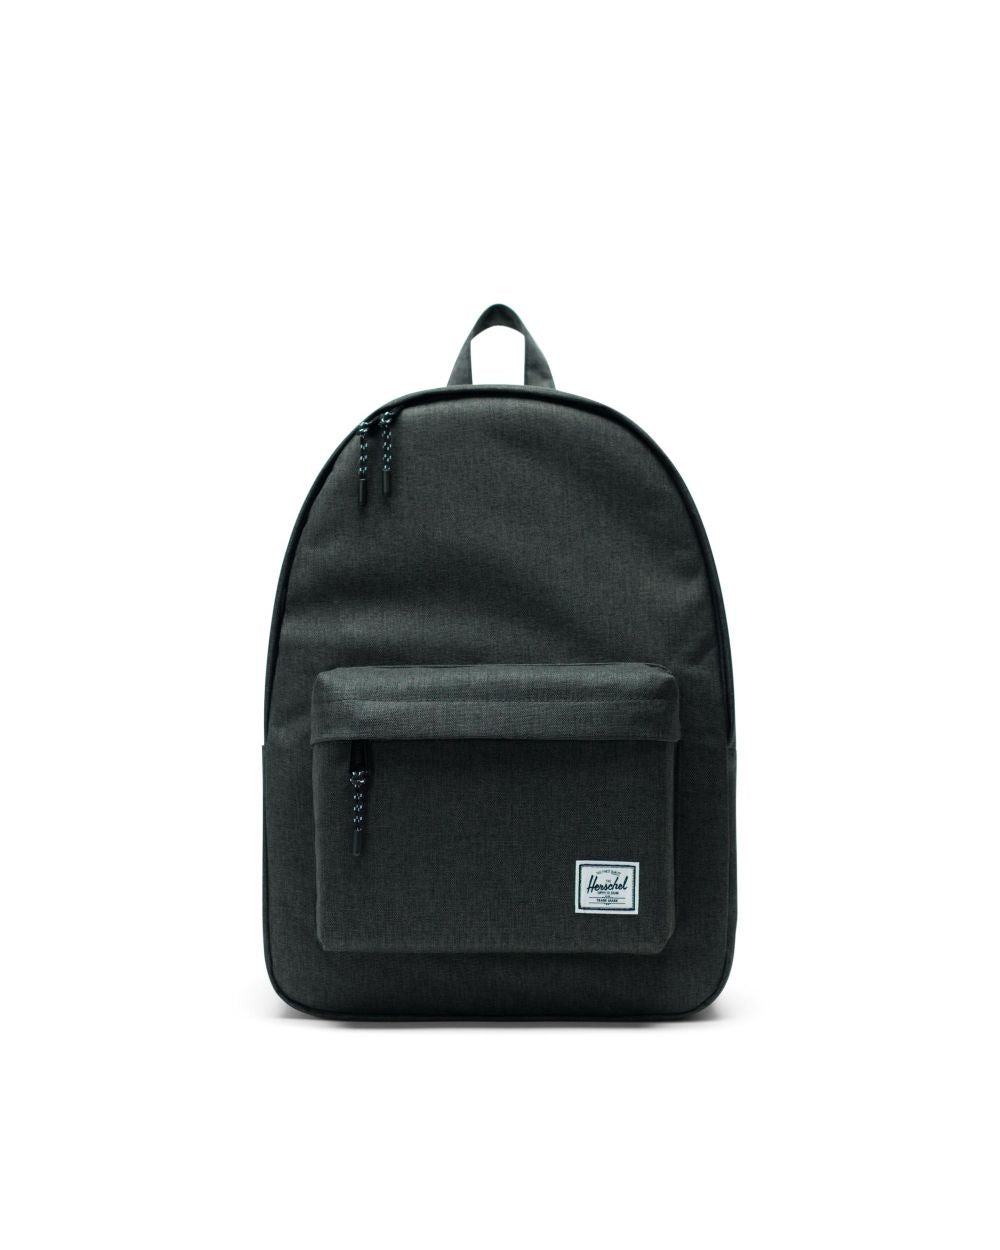 Herschel Classic Backpack Black Crosshatch